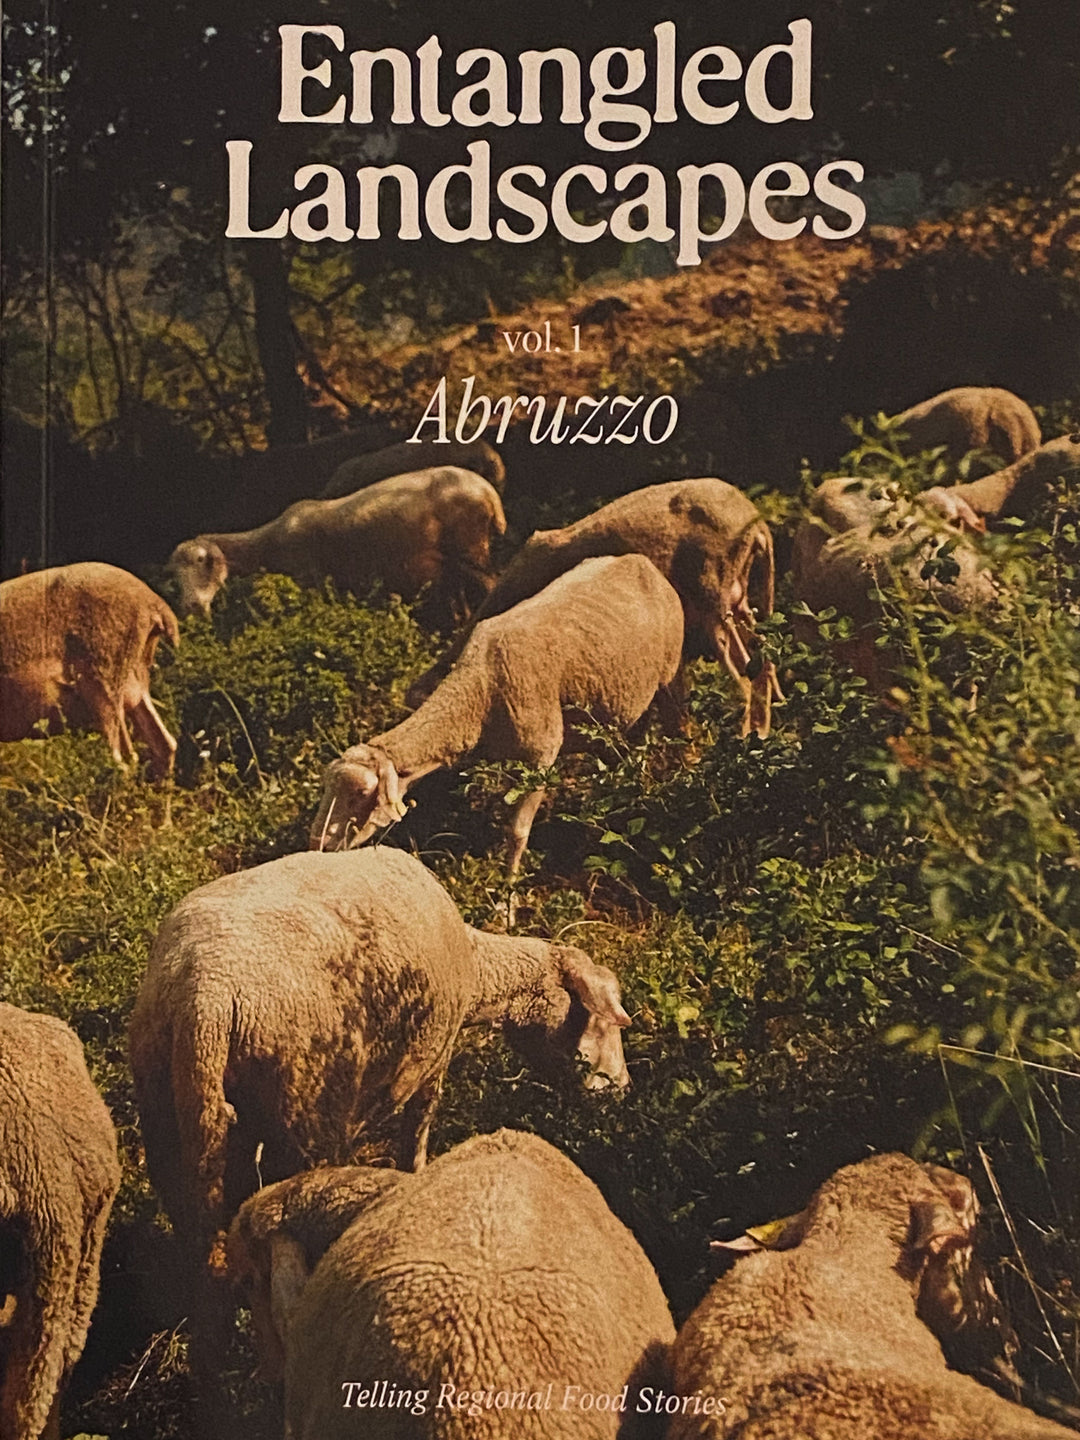 Entangled Landscapes vol. 1 Abruzzo